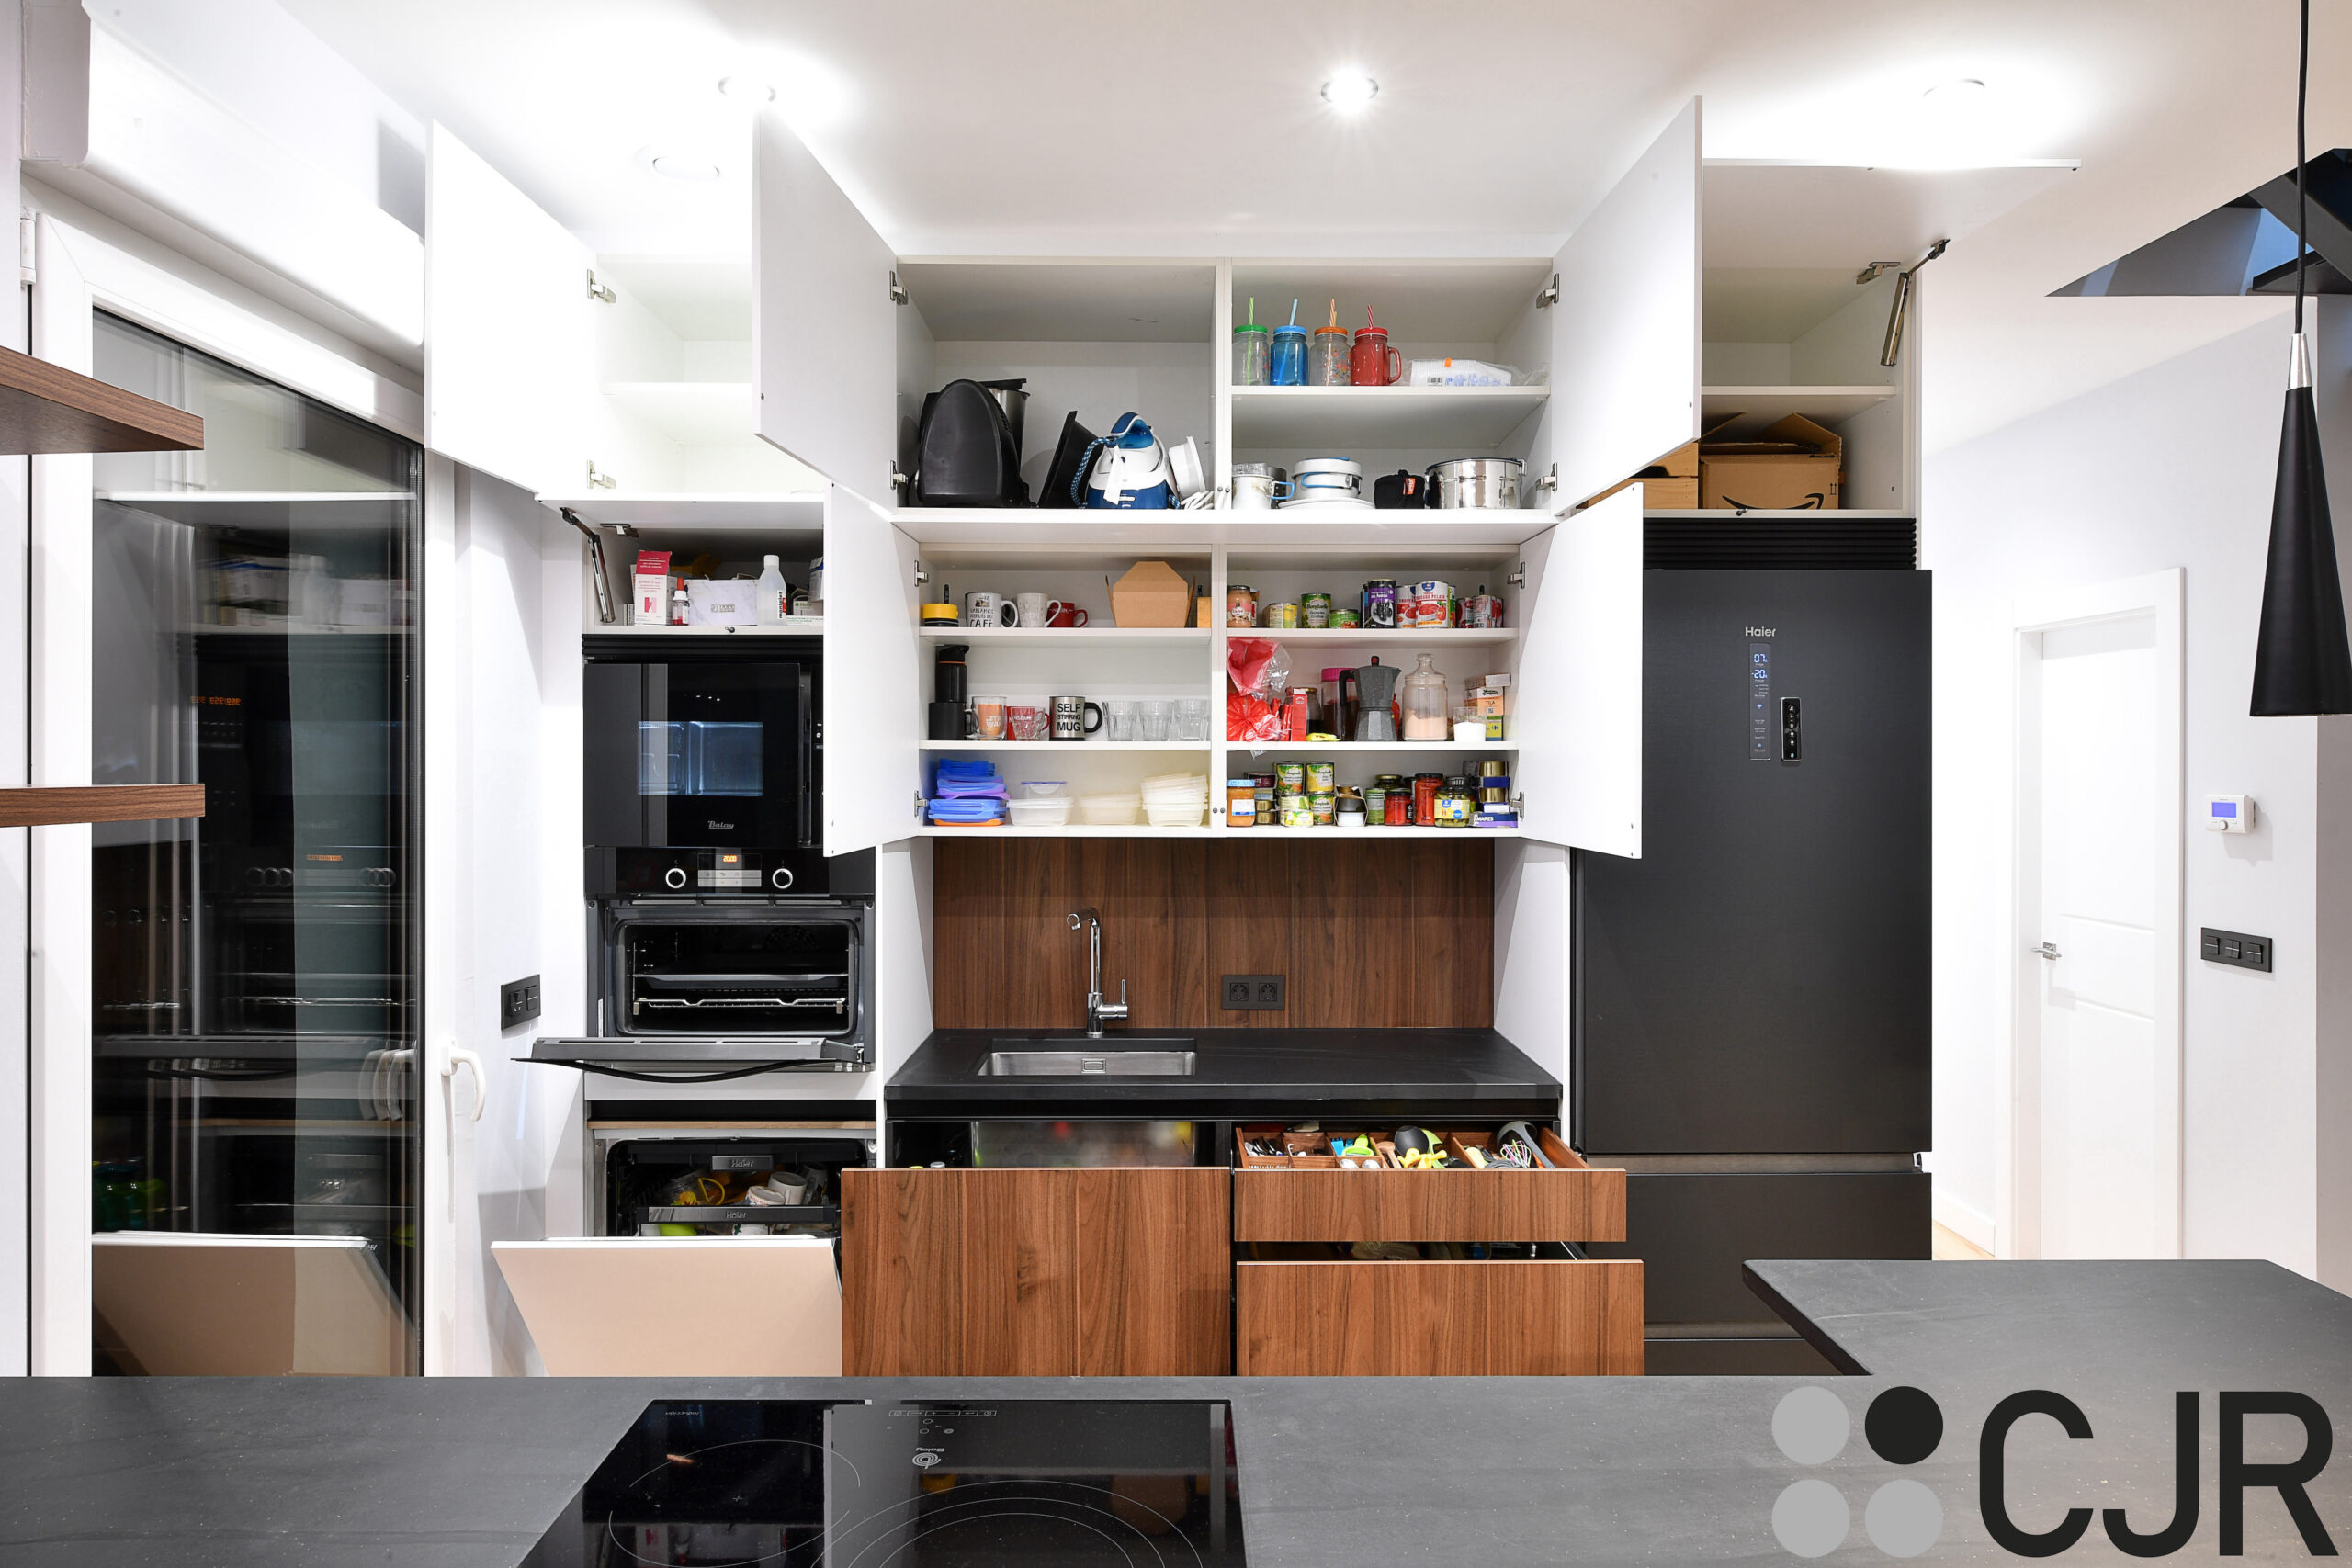 muebles de cocina en madera y blanco cocina abierta al salon cocinas cjr